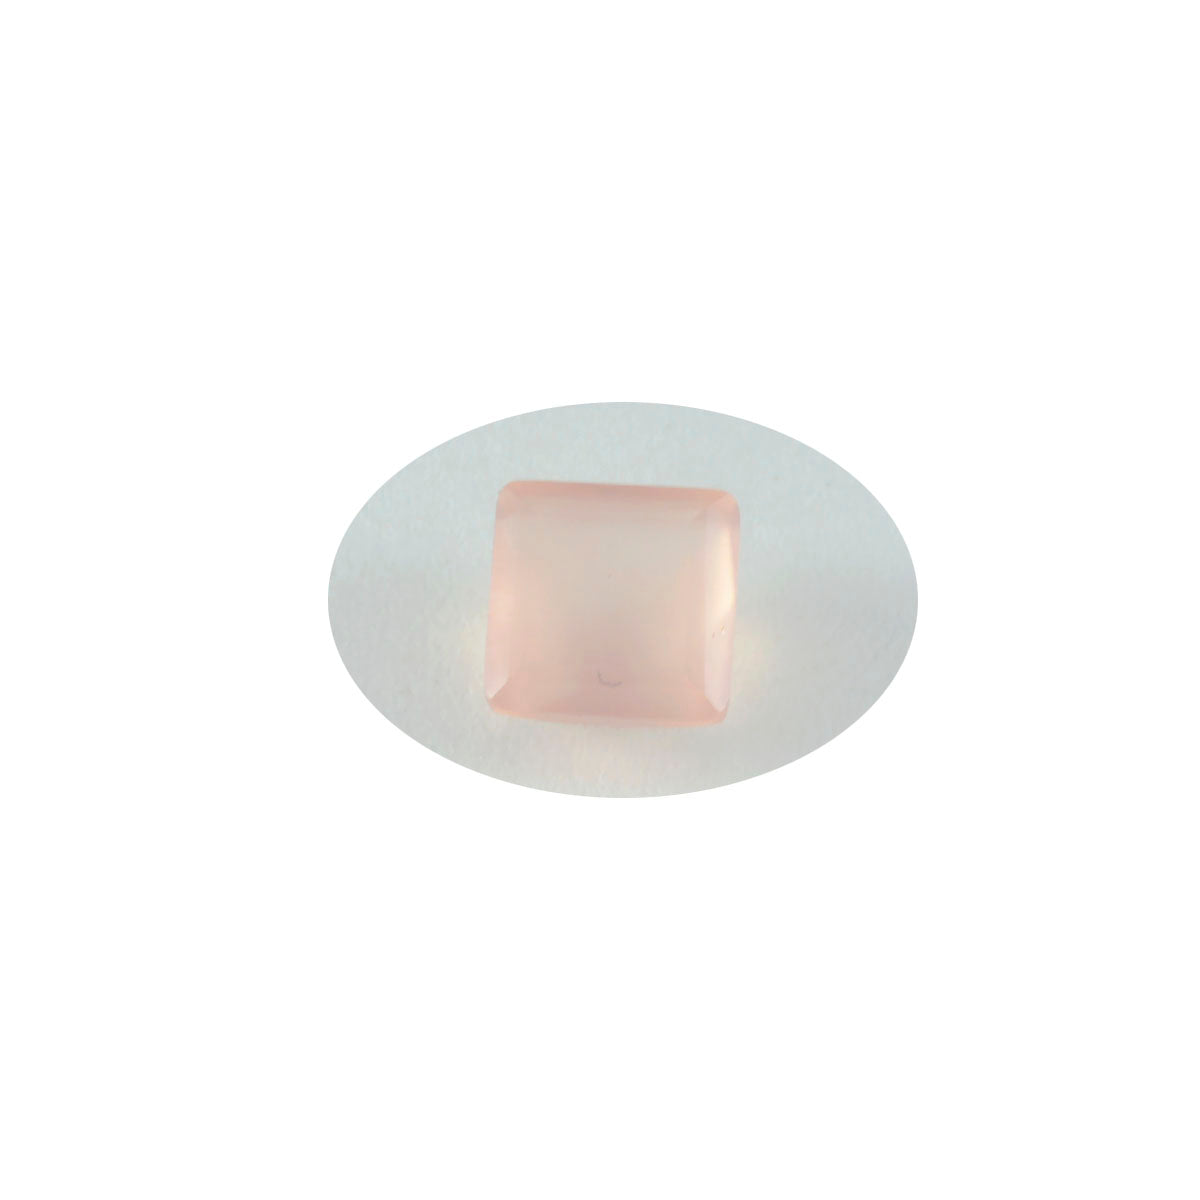 riyogems 1 шт. розовый кварц ограненный 12x12 мм квадратной формы сладкий качественный свободный камень